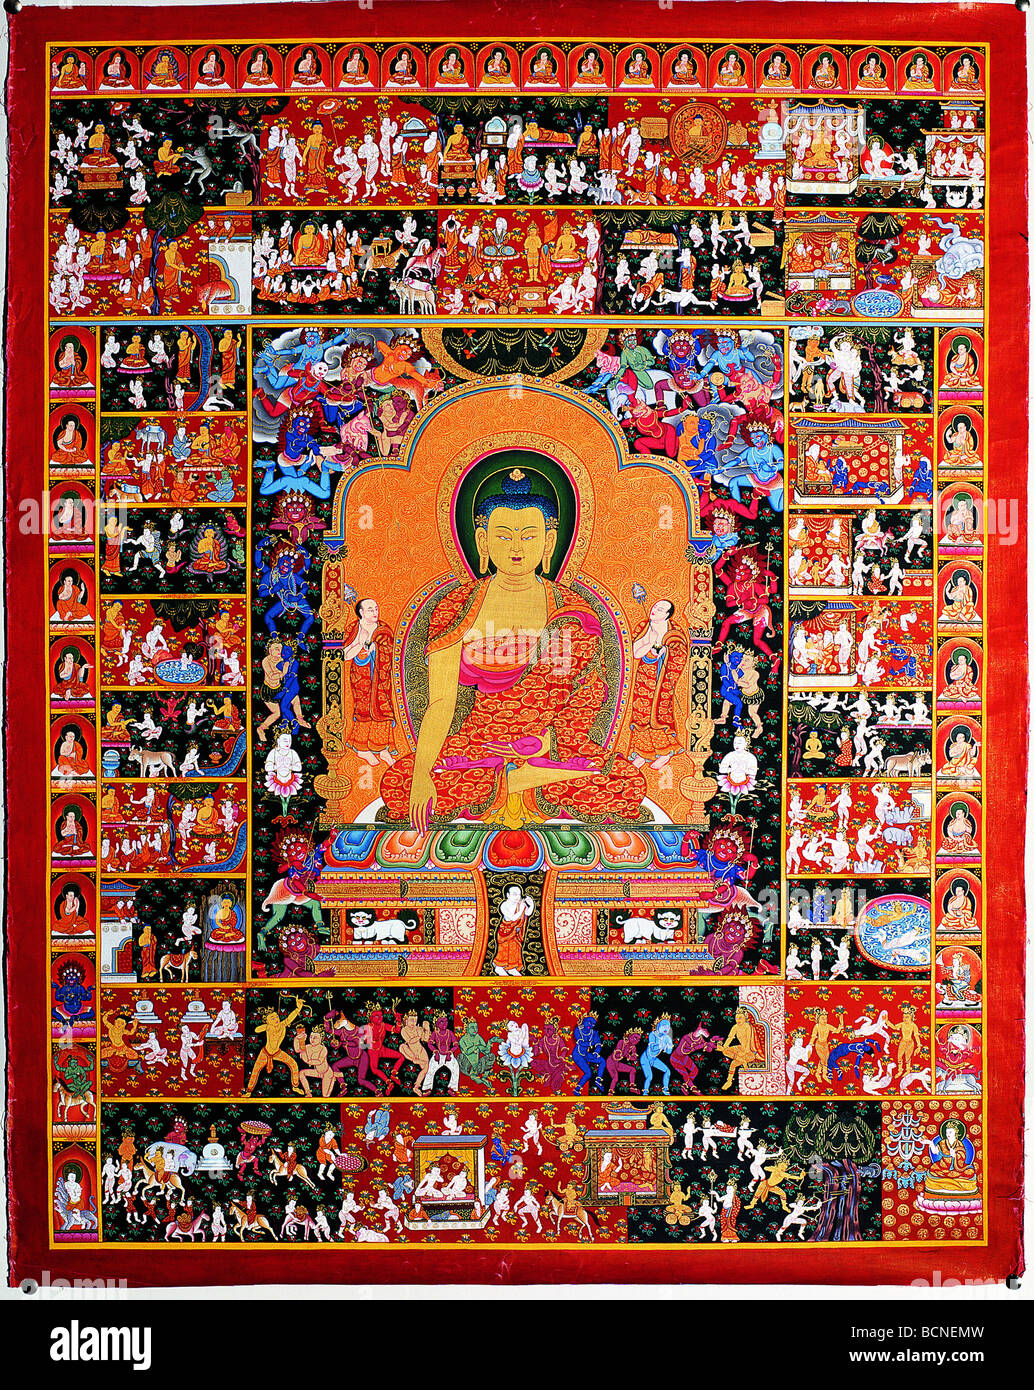 Tangka représentant l'histoire de la vie de Bouddha, Tibet, Chine Banque D'Images